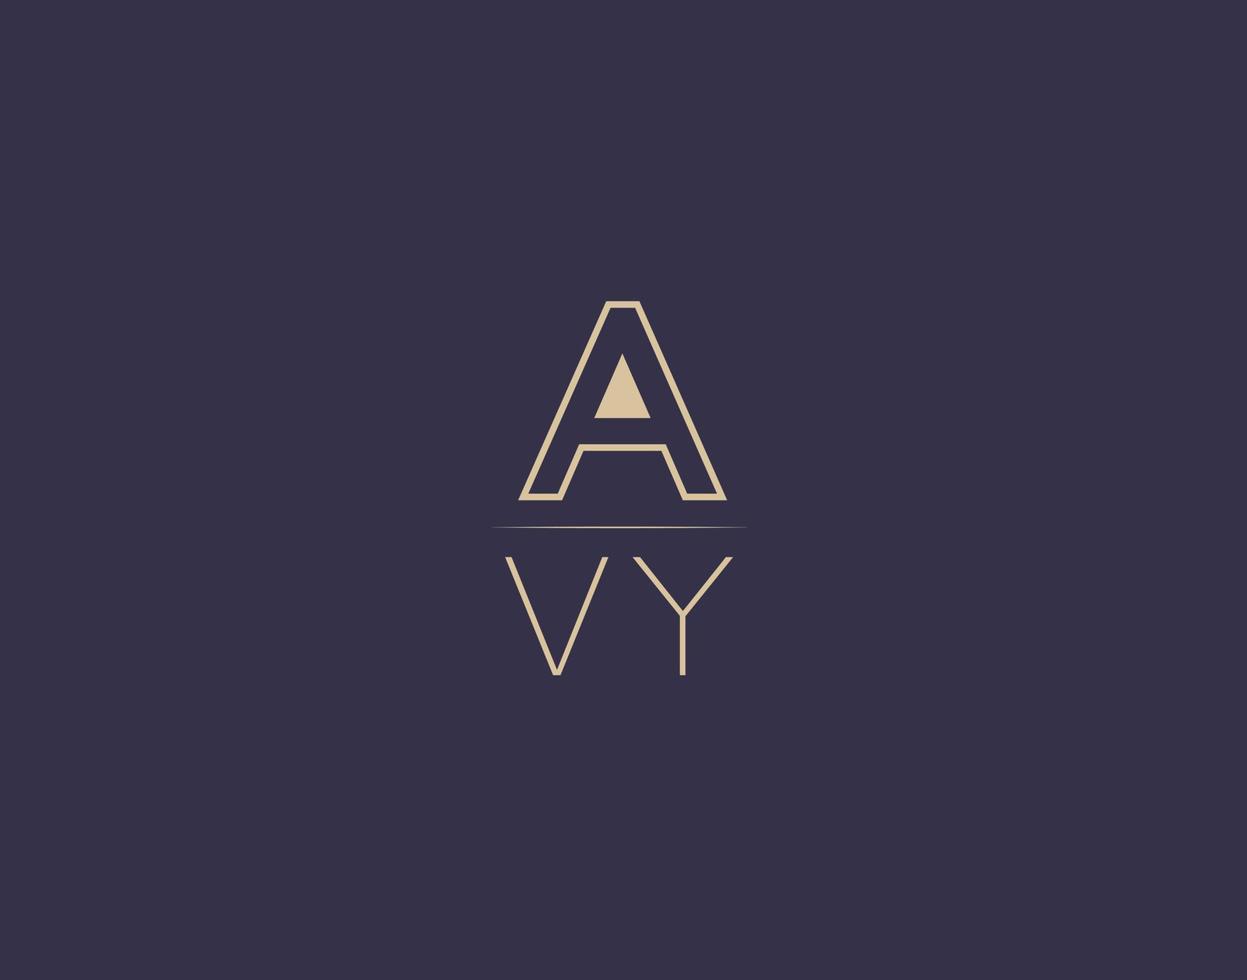 avy carta logotipo diseño moderno minimalista vector imágenes